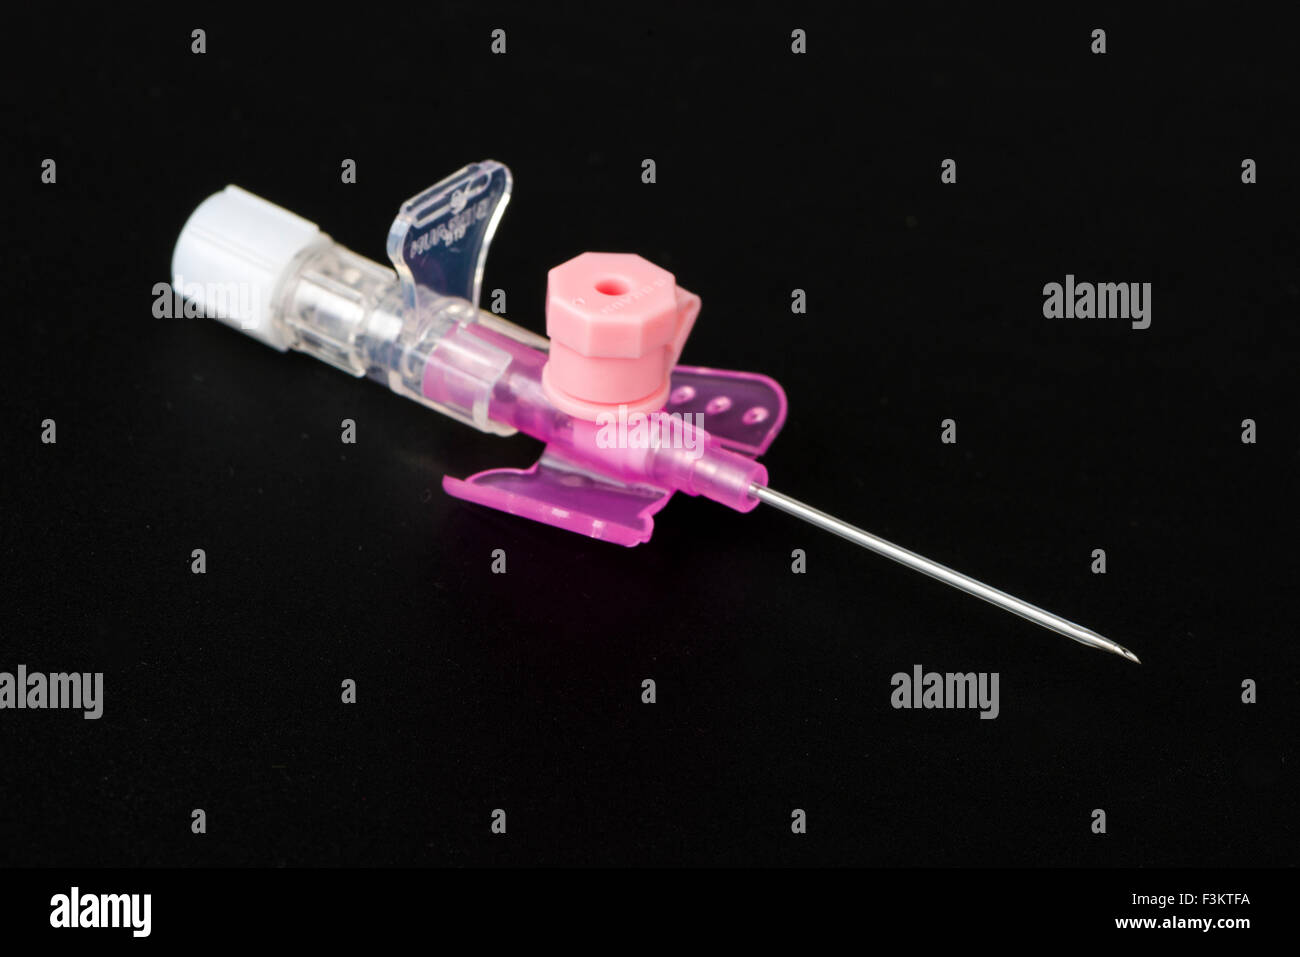 Una sicurezza rosa catetere iv con porta di iniezione per uso medico, visualizzato su una tavola nera Foto Stock